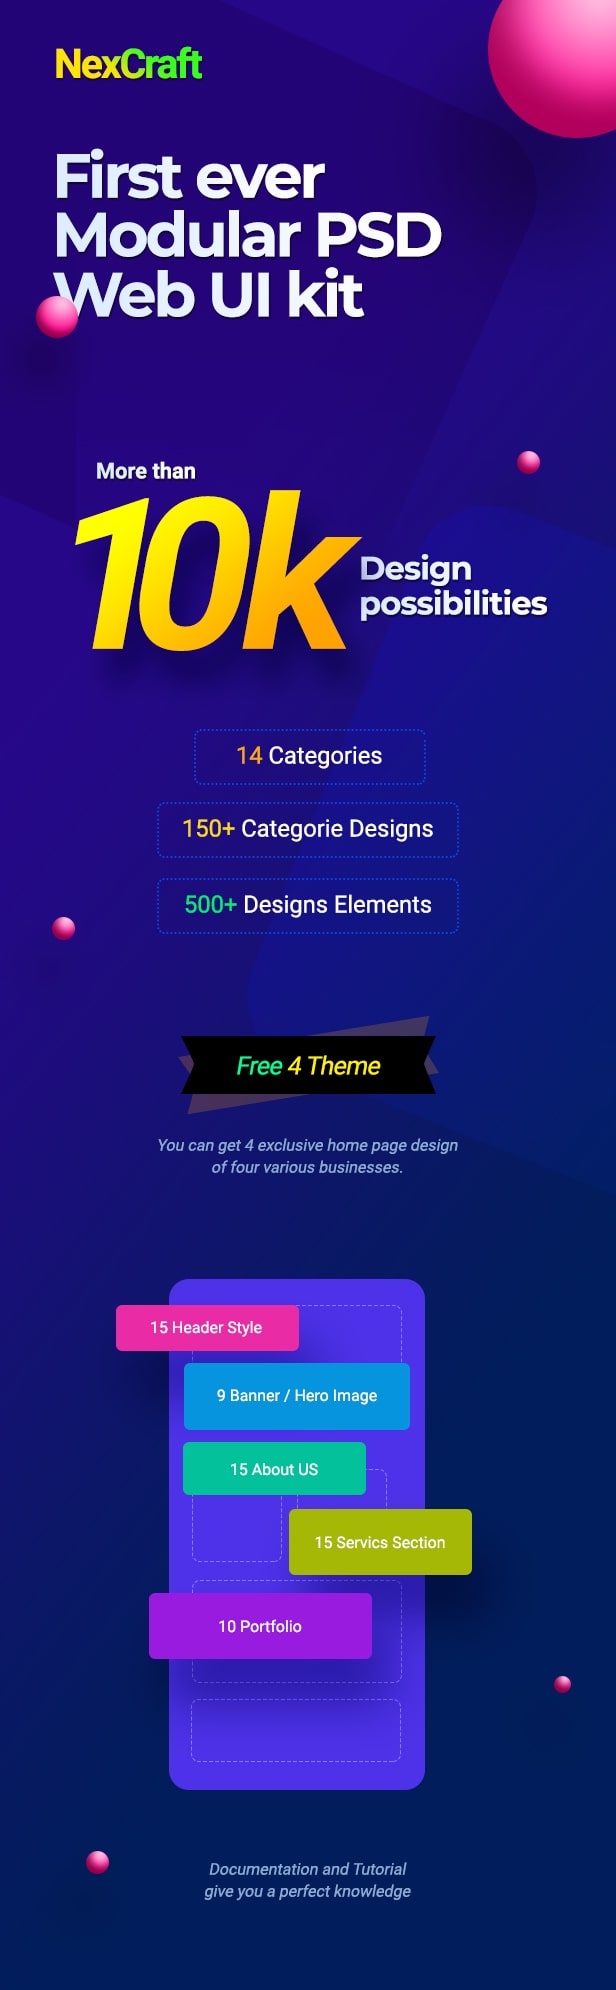 NexCraft | Modular PSD Template and Web UI Kit - 1